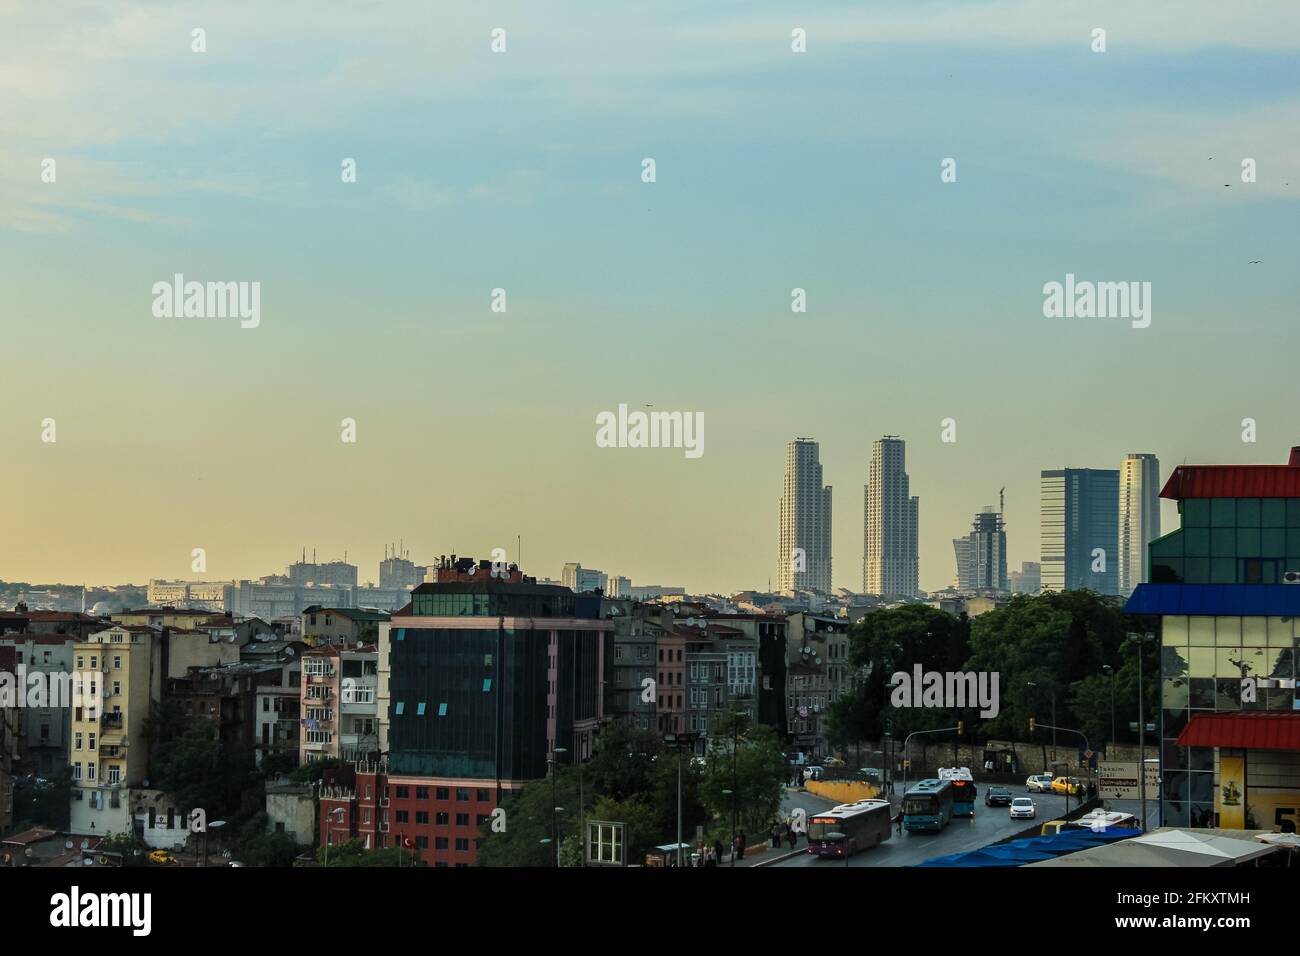 Istanbul, Turchia - 13 maggio 2013: Vista di Istanbul dalla camera dell'hotel Marmara Pera Foto Stock